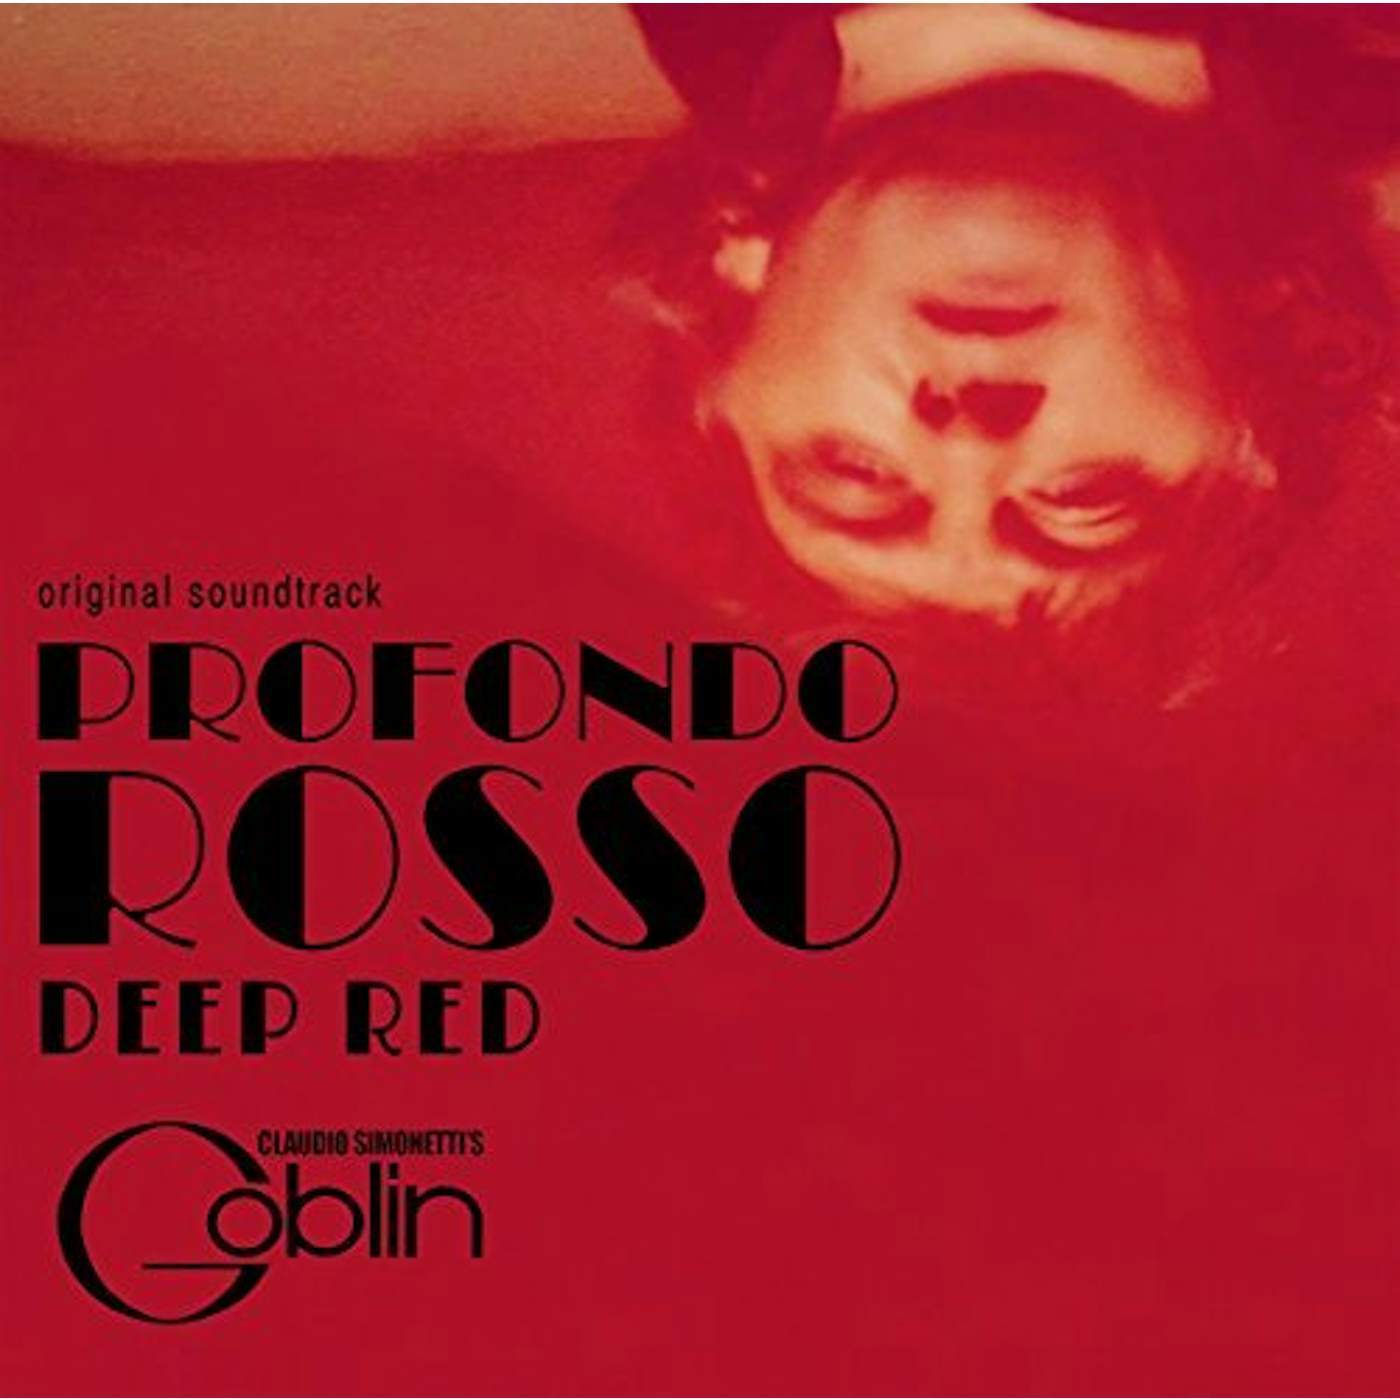 Claudio Simonetti's Goblin DEEP RED / PROFONDO ROSSO - Original Soundtrack CD